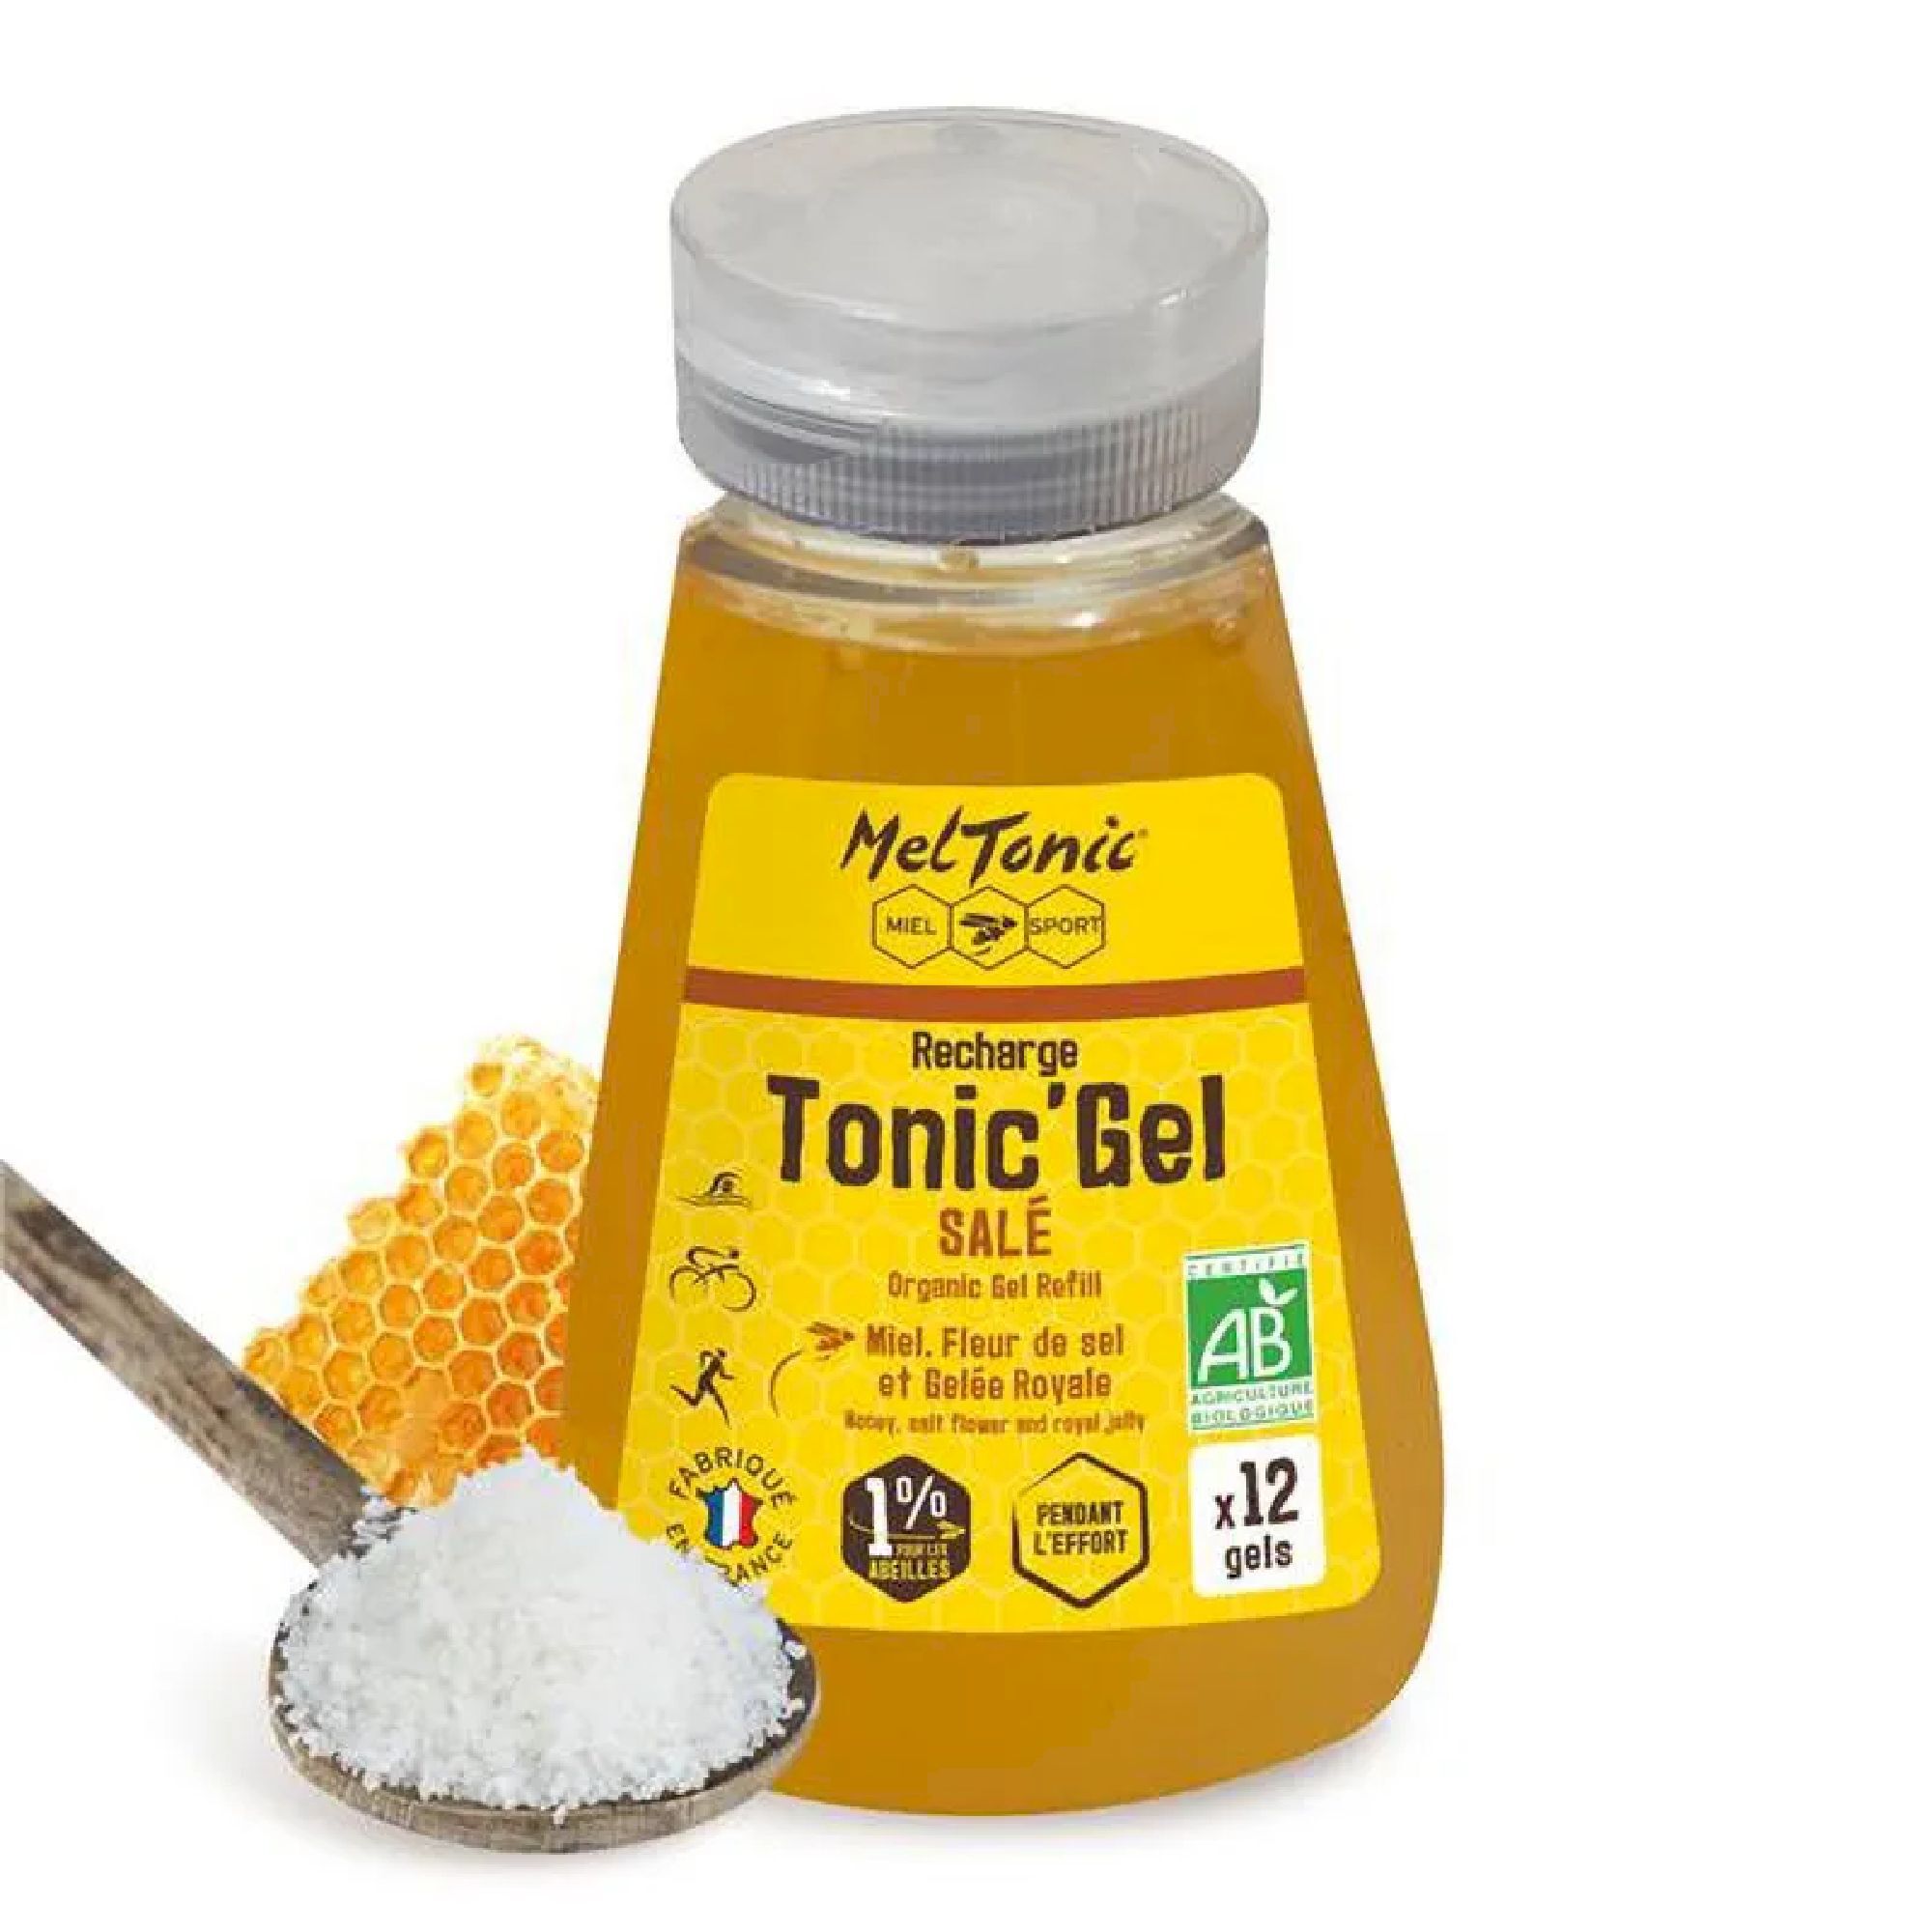 Meltonic Tonic Gel Bio Sale - Recharge Eco - Energy gel